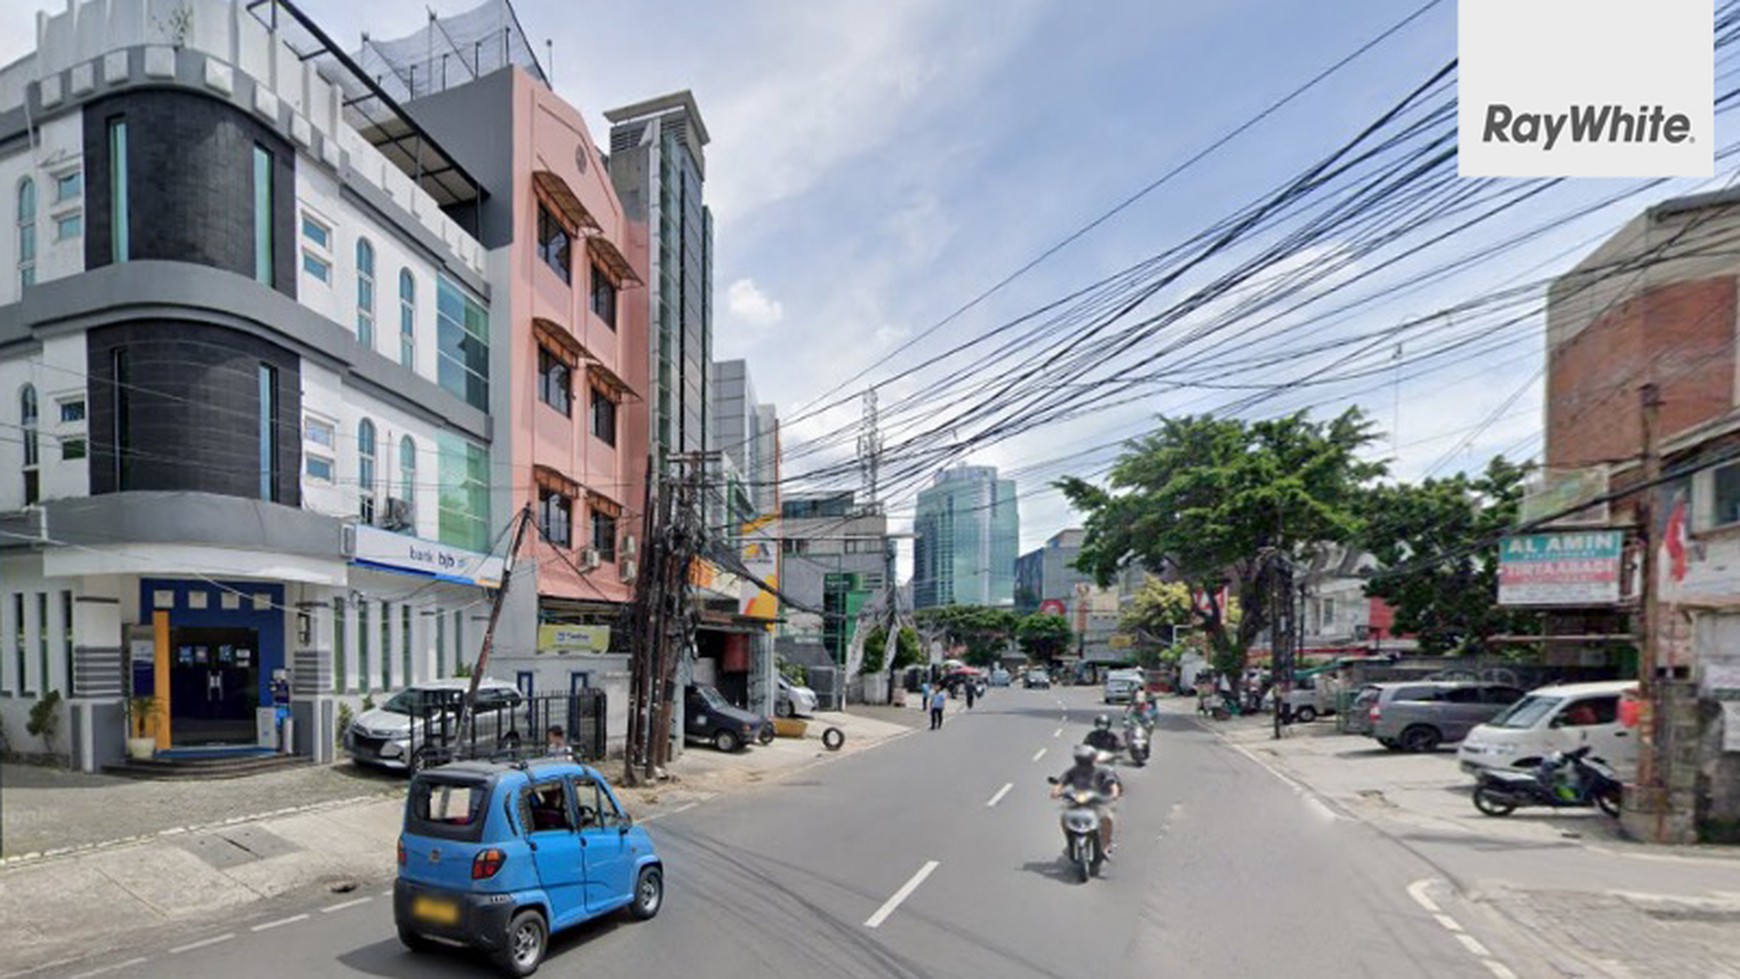 FOR SALE Tanah Komersial Bendungan Hilir Raya Lokasi Strategis Untuk Bisnis Jakarta Pusat